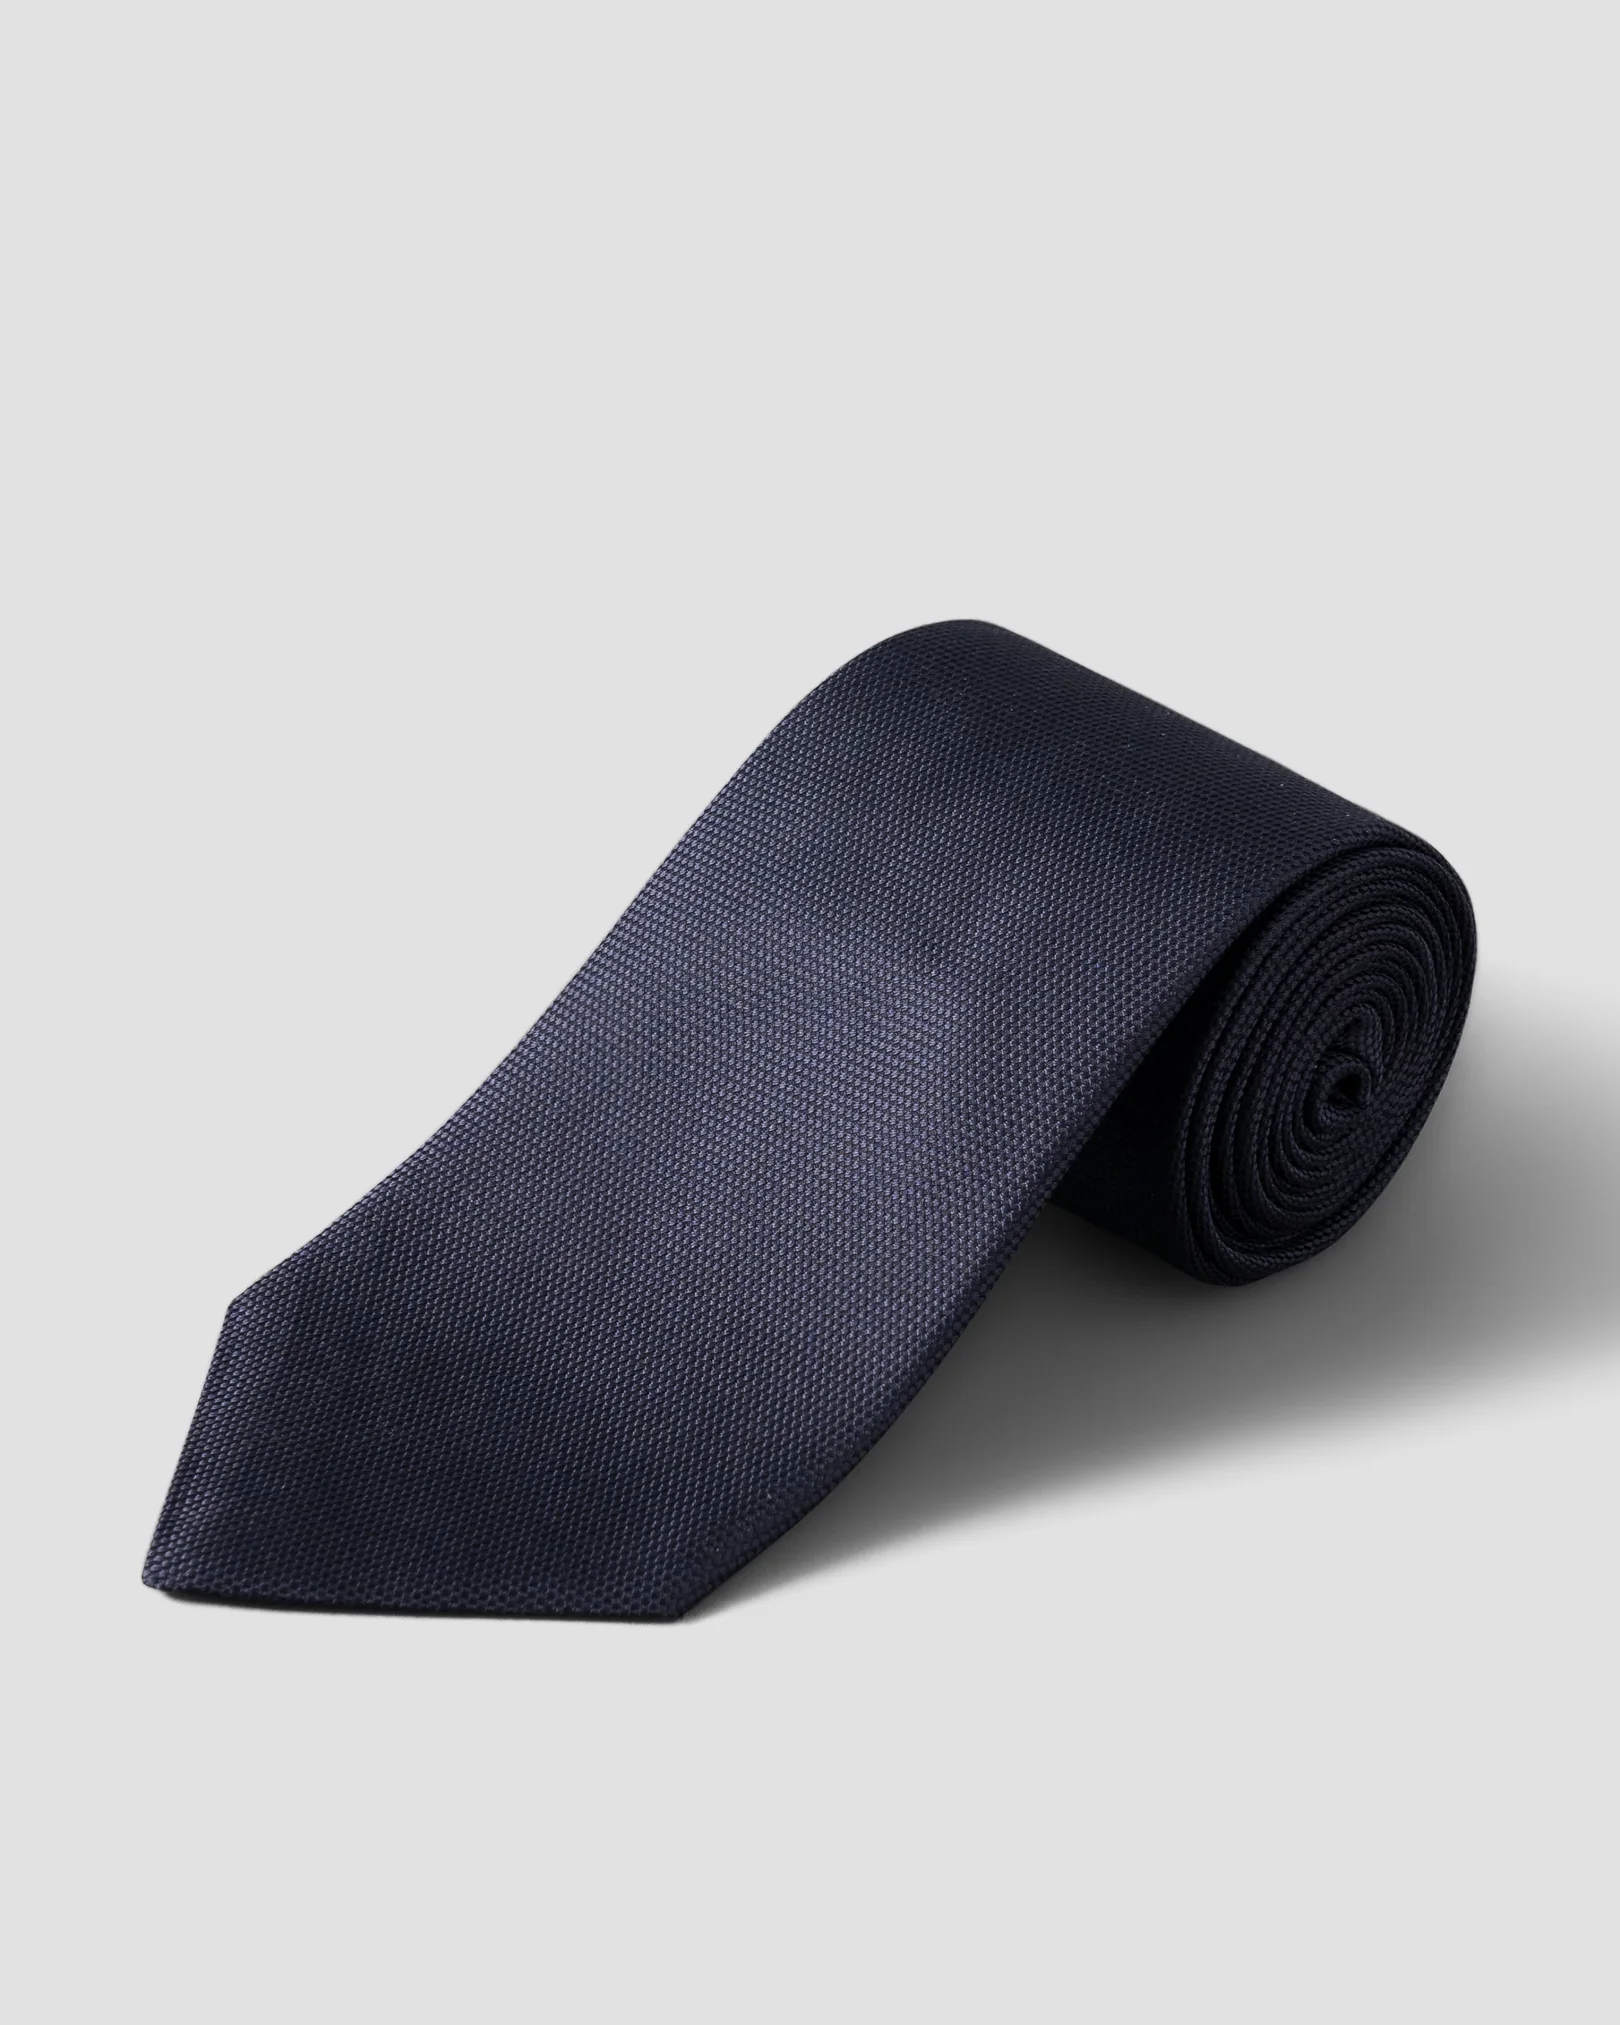 Cravate bleu foncé en soie nattée